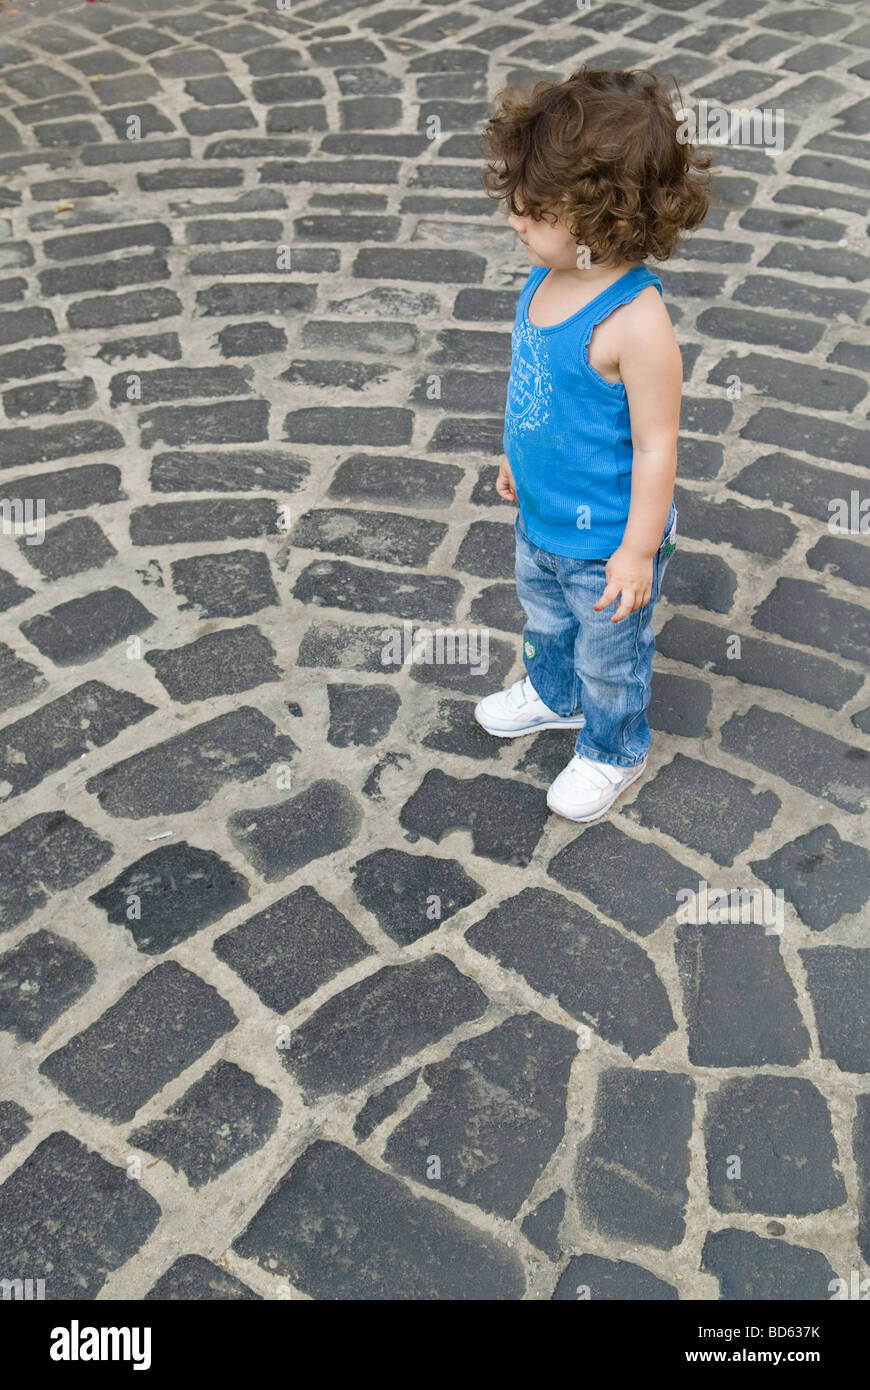 Jeune fille debout sur une route pavée Banque D'Images